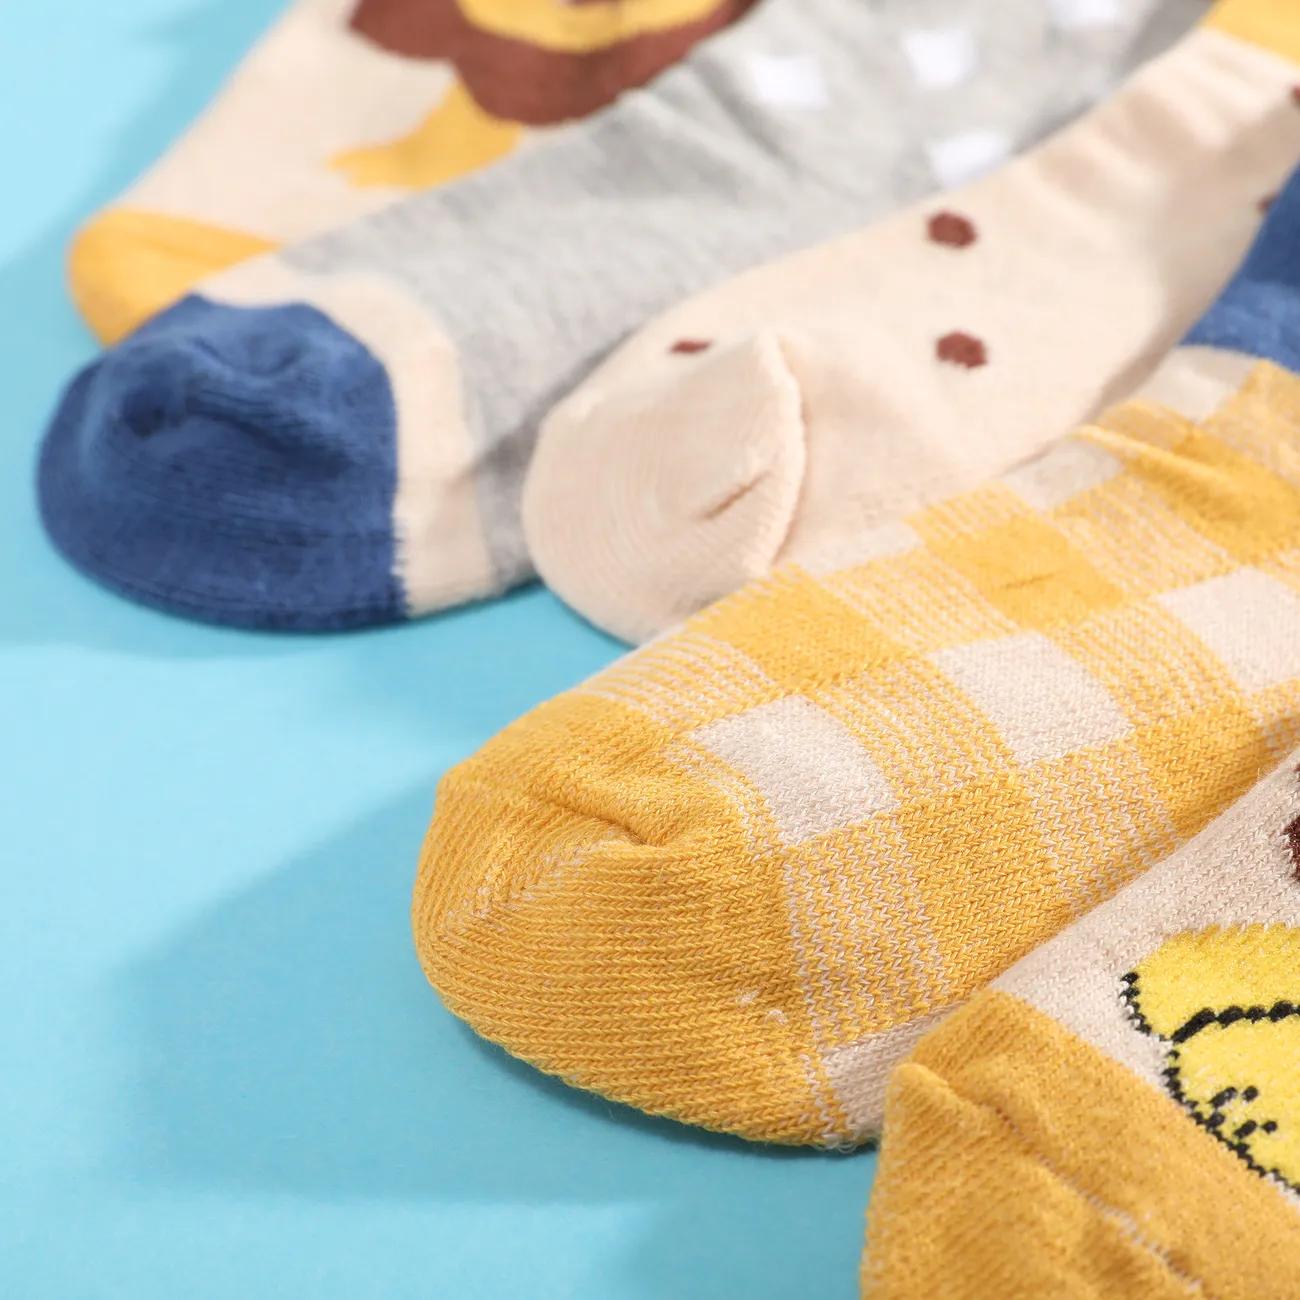 5er-Pack Kleinkind-/Kinder-Cartoon-Löwen-Socken mit mittlerer Wade Mehrfarben big image 1